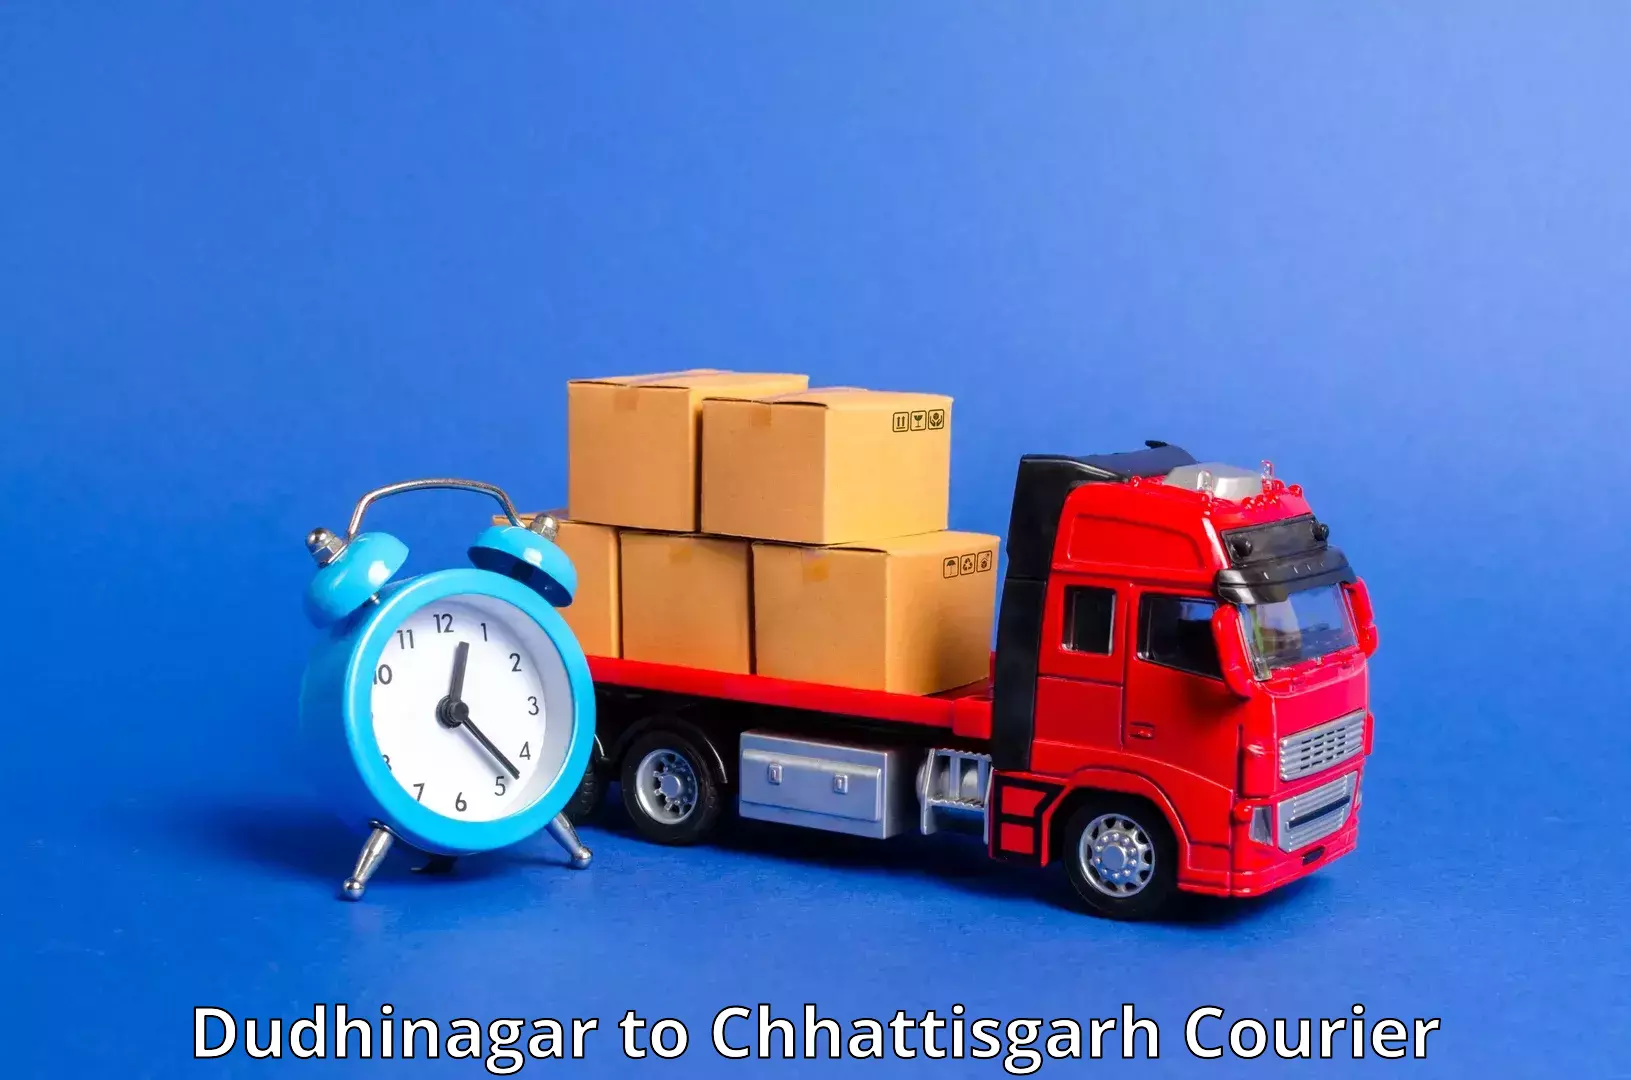 Air courier services Dudhinagar to Chhattisgarh